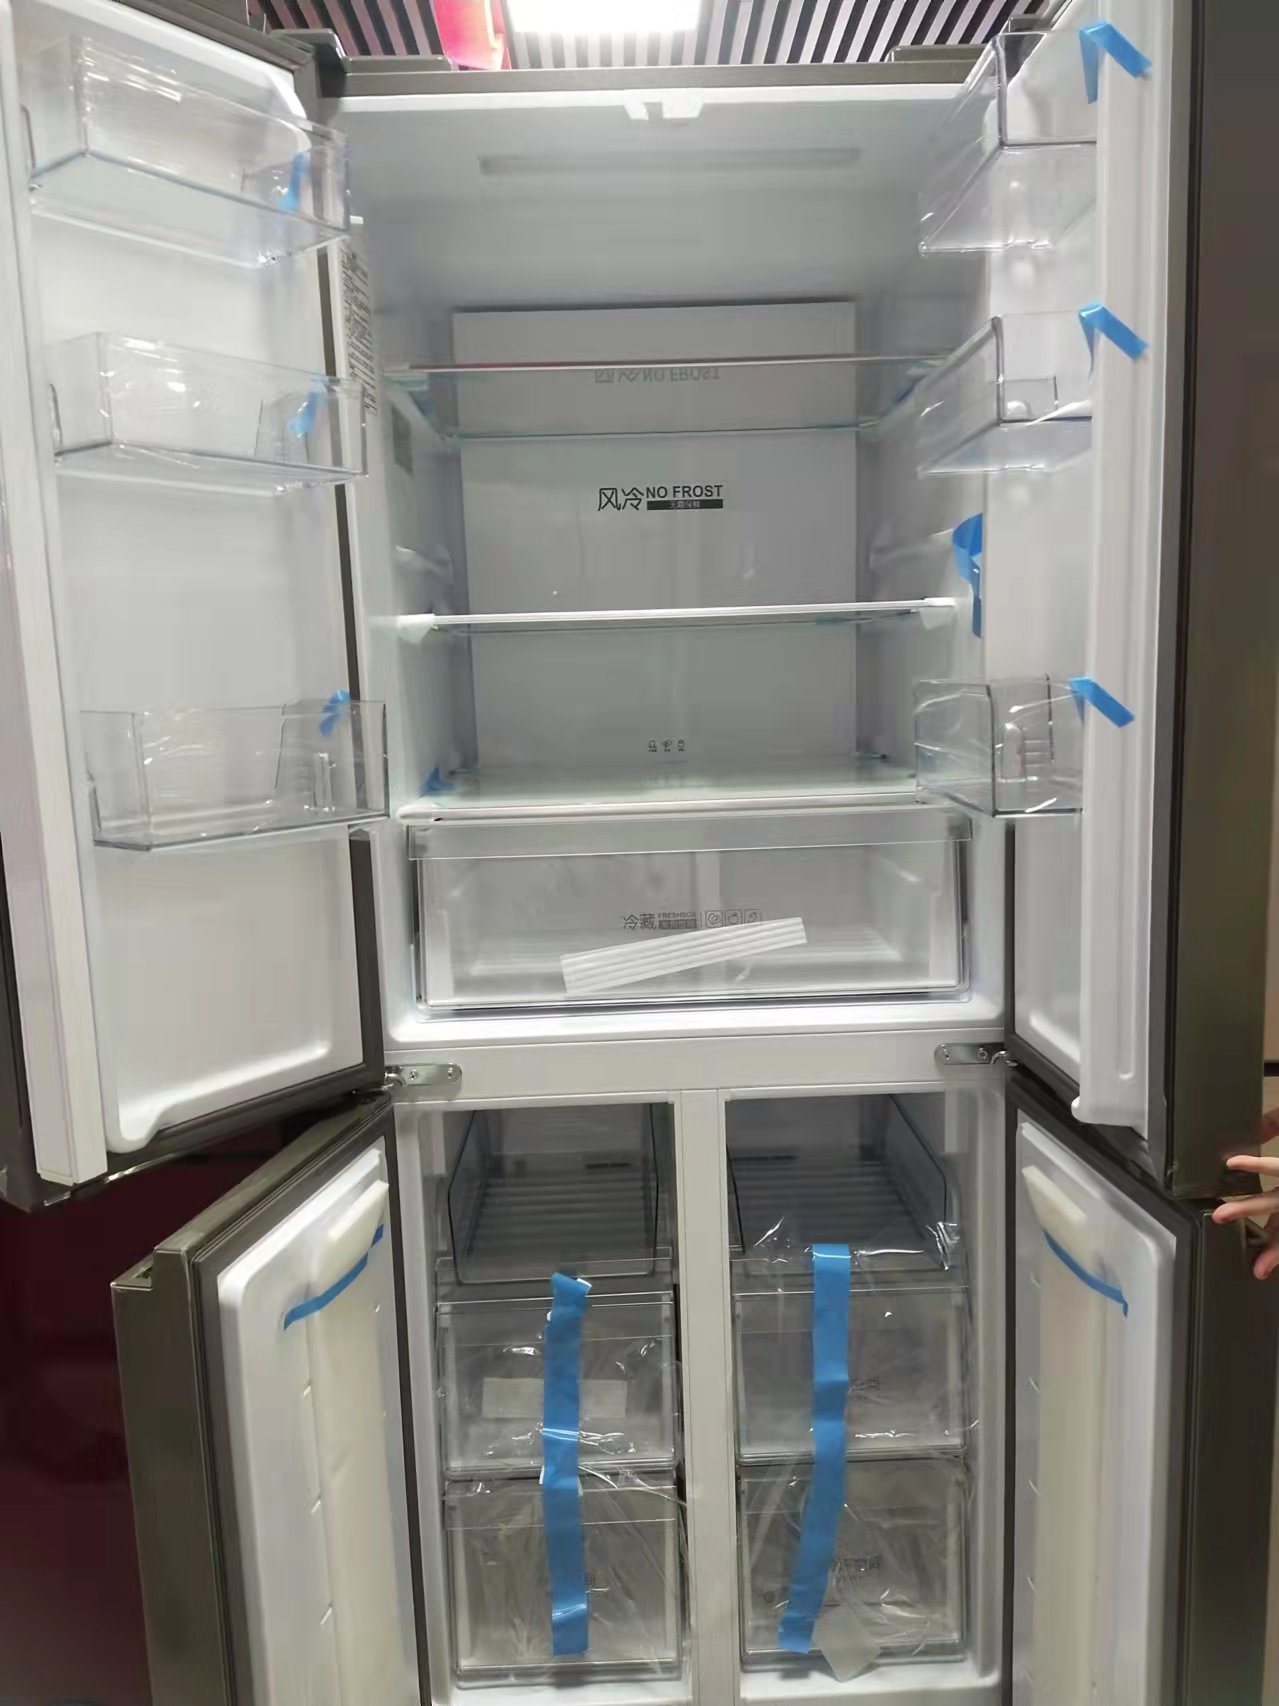 冰箱冷柜线上销量同比增长1.89% 广州加强封控措施 